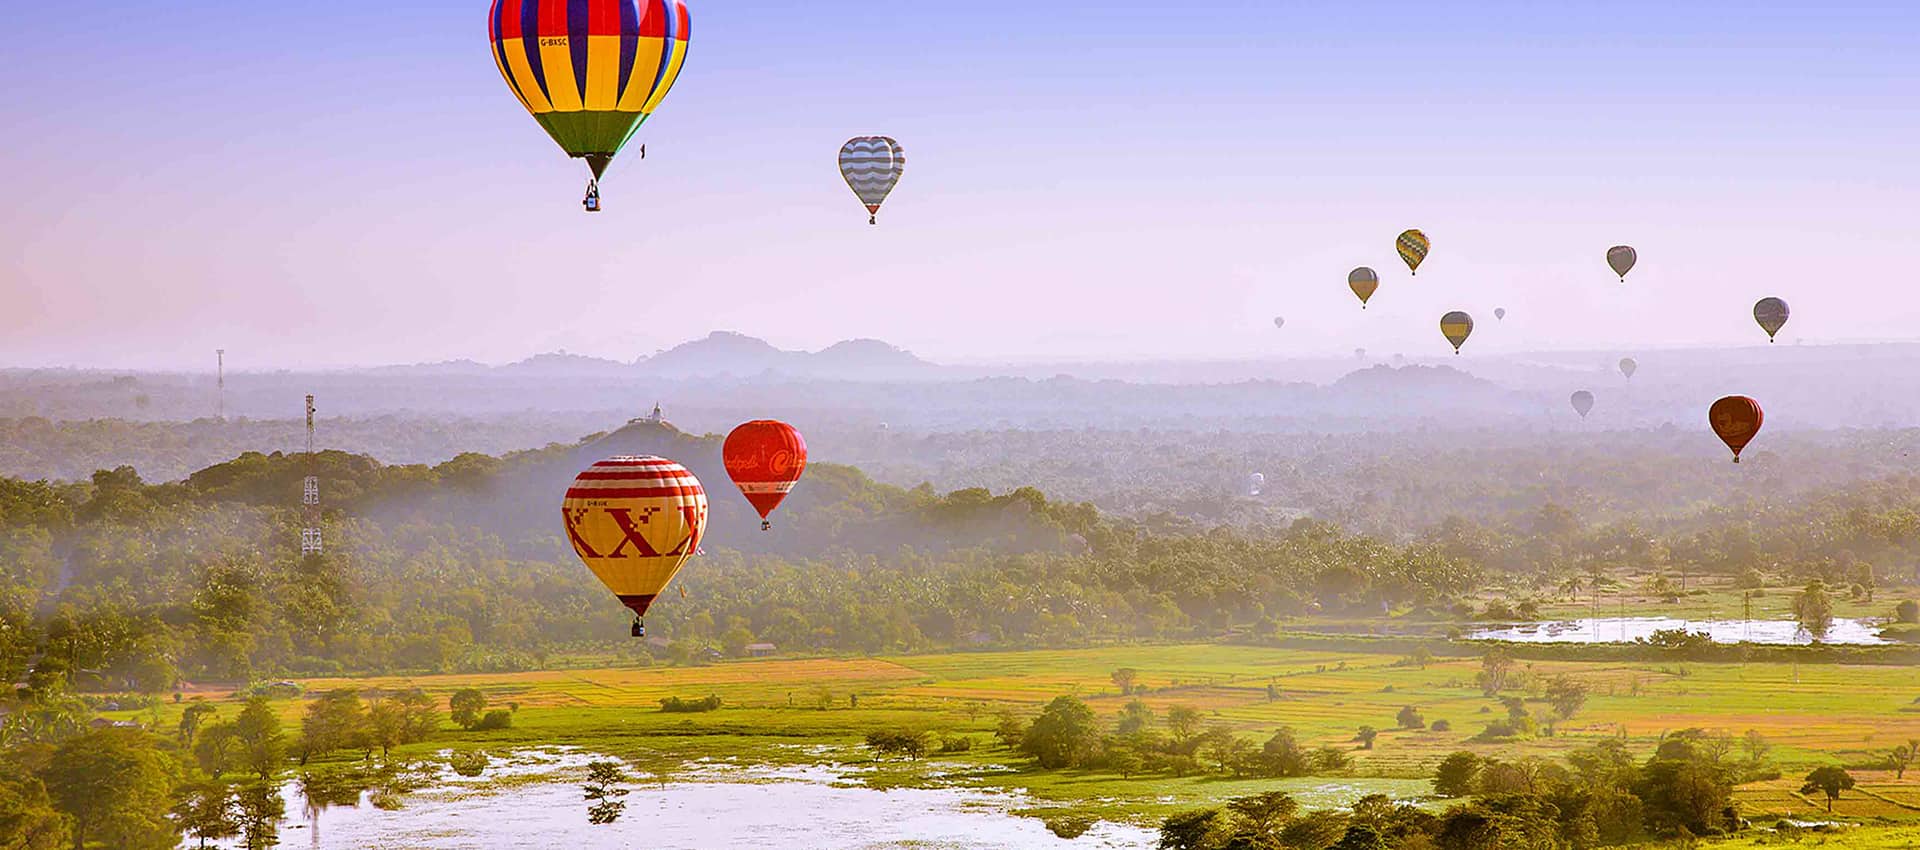 Sri Lanka Hot Air Ballooning